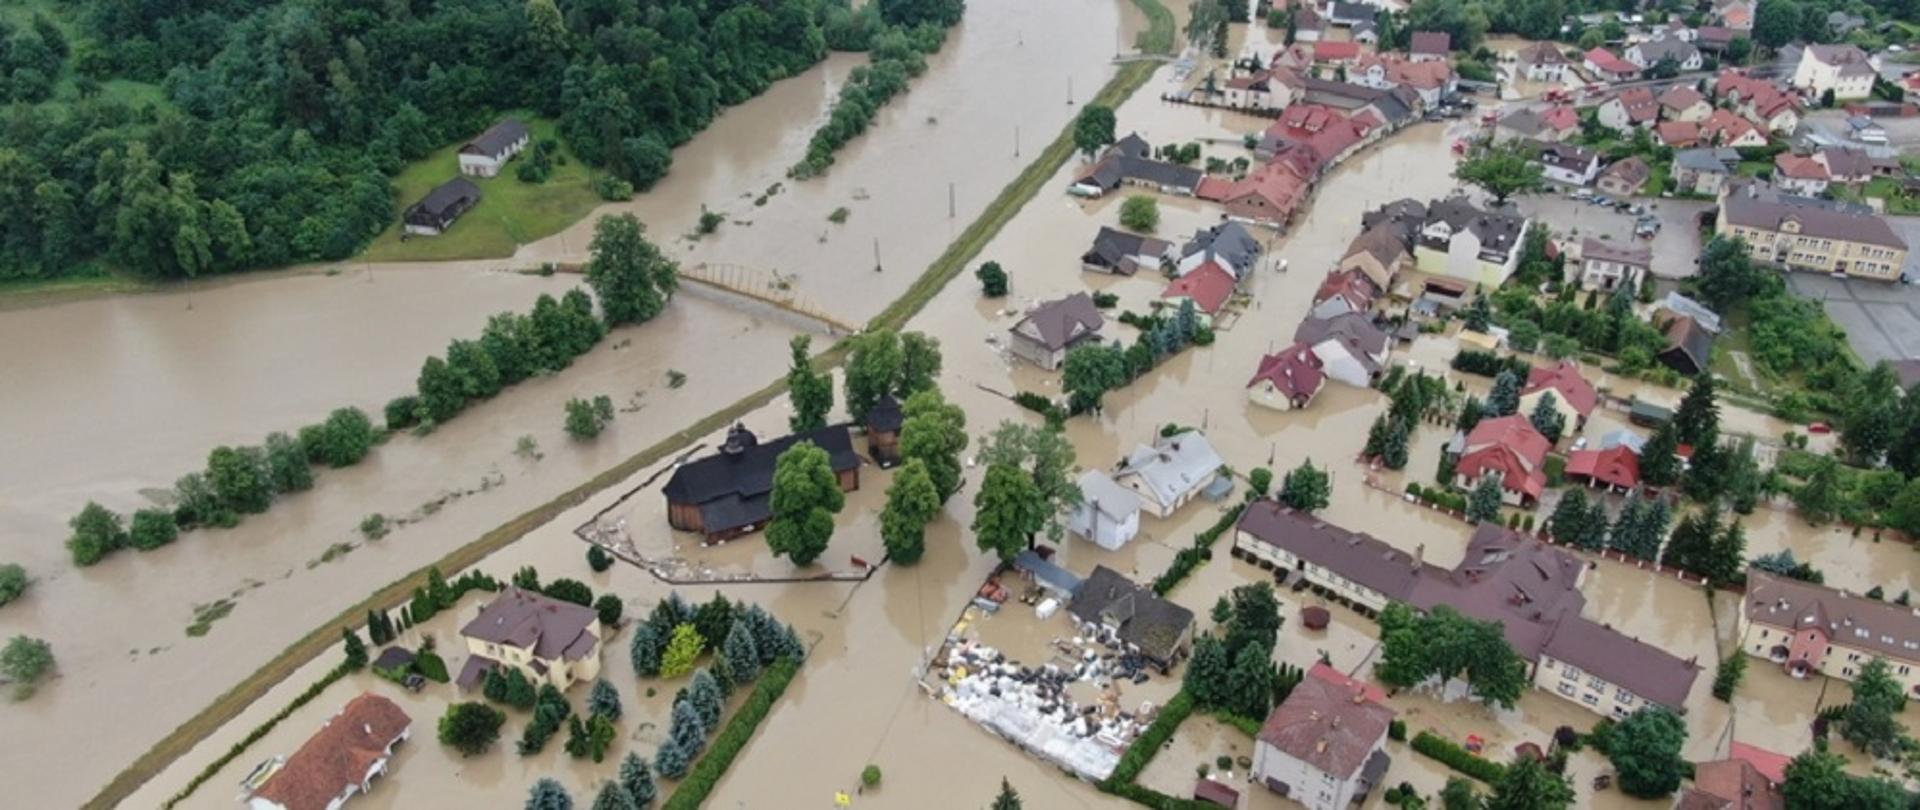 Zdjęcie przedstawia widok miejscowości pokazany z góry po powodzi. Widać budynki, zalane wodą posesje i ulice